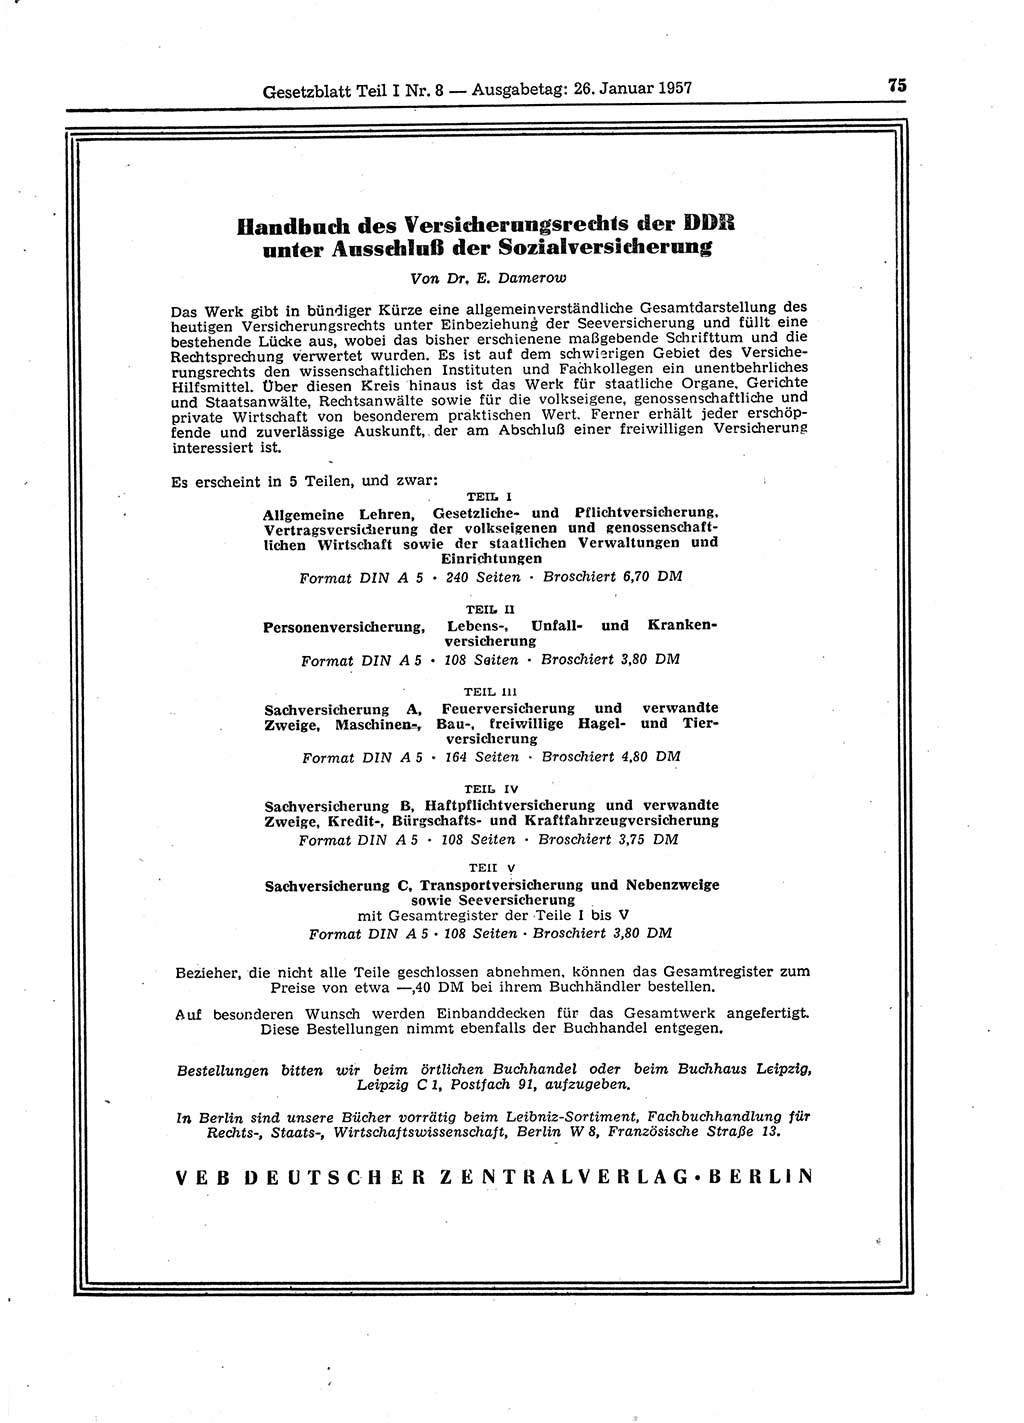 Gesetzblatt (GBl.) der Deutschen Demokratischen Republik (DDR) Teil Ⅰ 1957, Seite 75 (GBl. DDR Ⅰ 1957, S. 75)